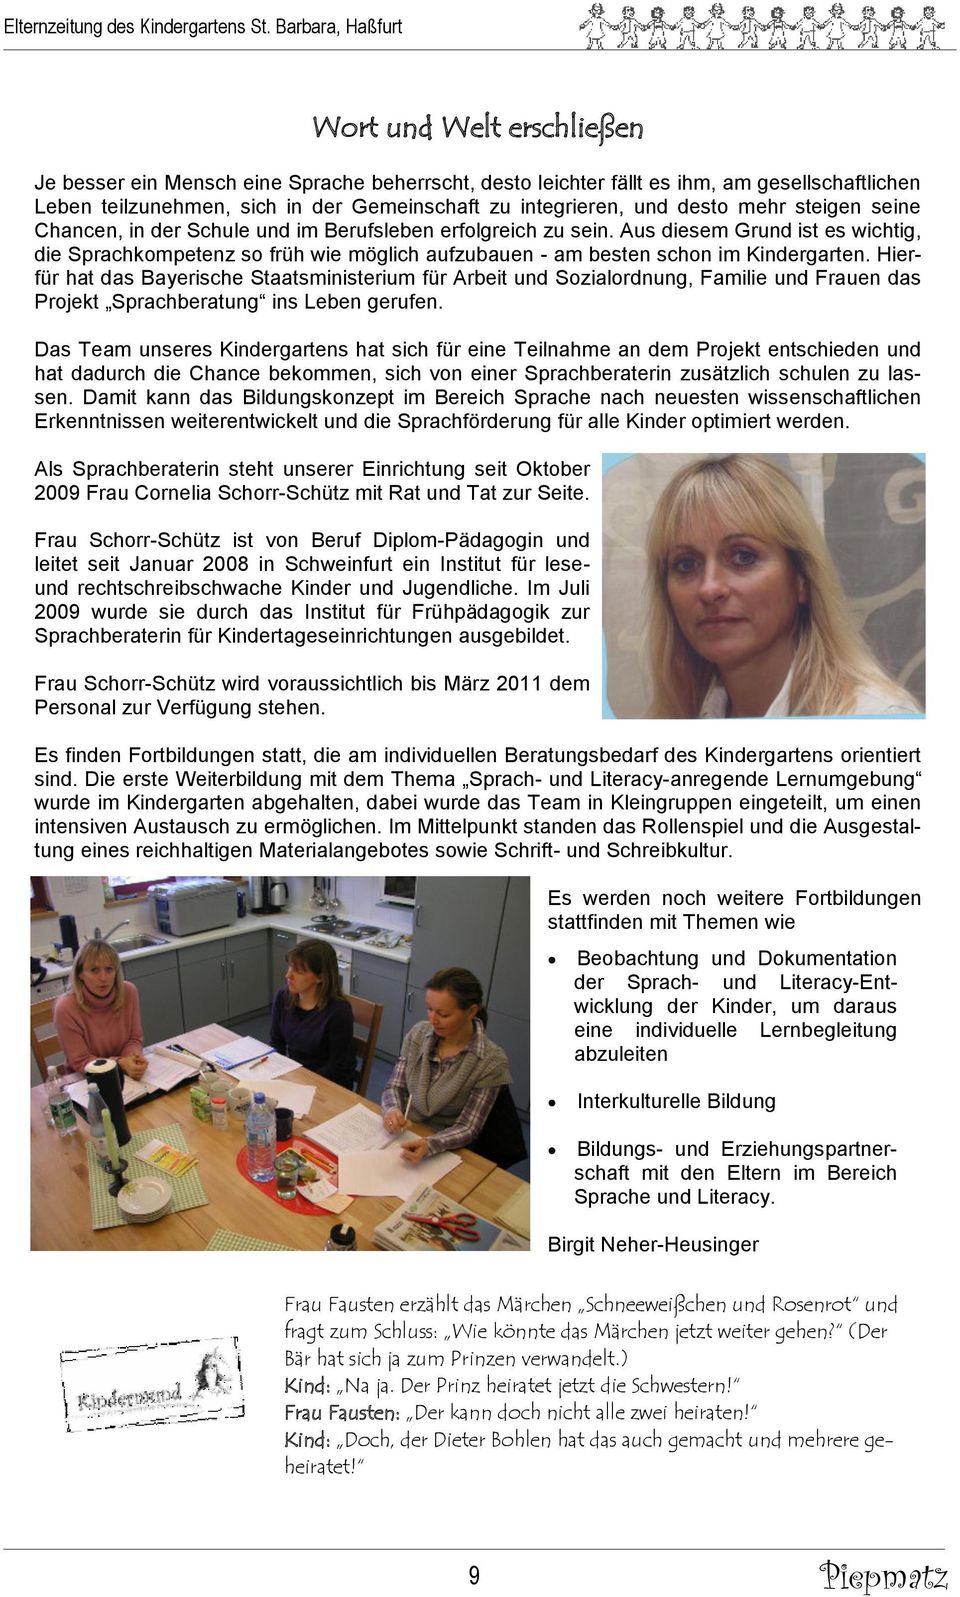 Hierfür hat das Bayerische Staatsministerium für Arbeit und Sozialordnung, Familie und Frauen das Projekt Sprachberatung ins Leben gerufen.